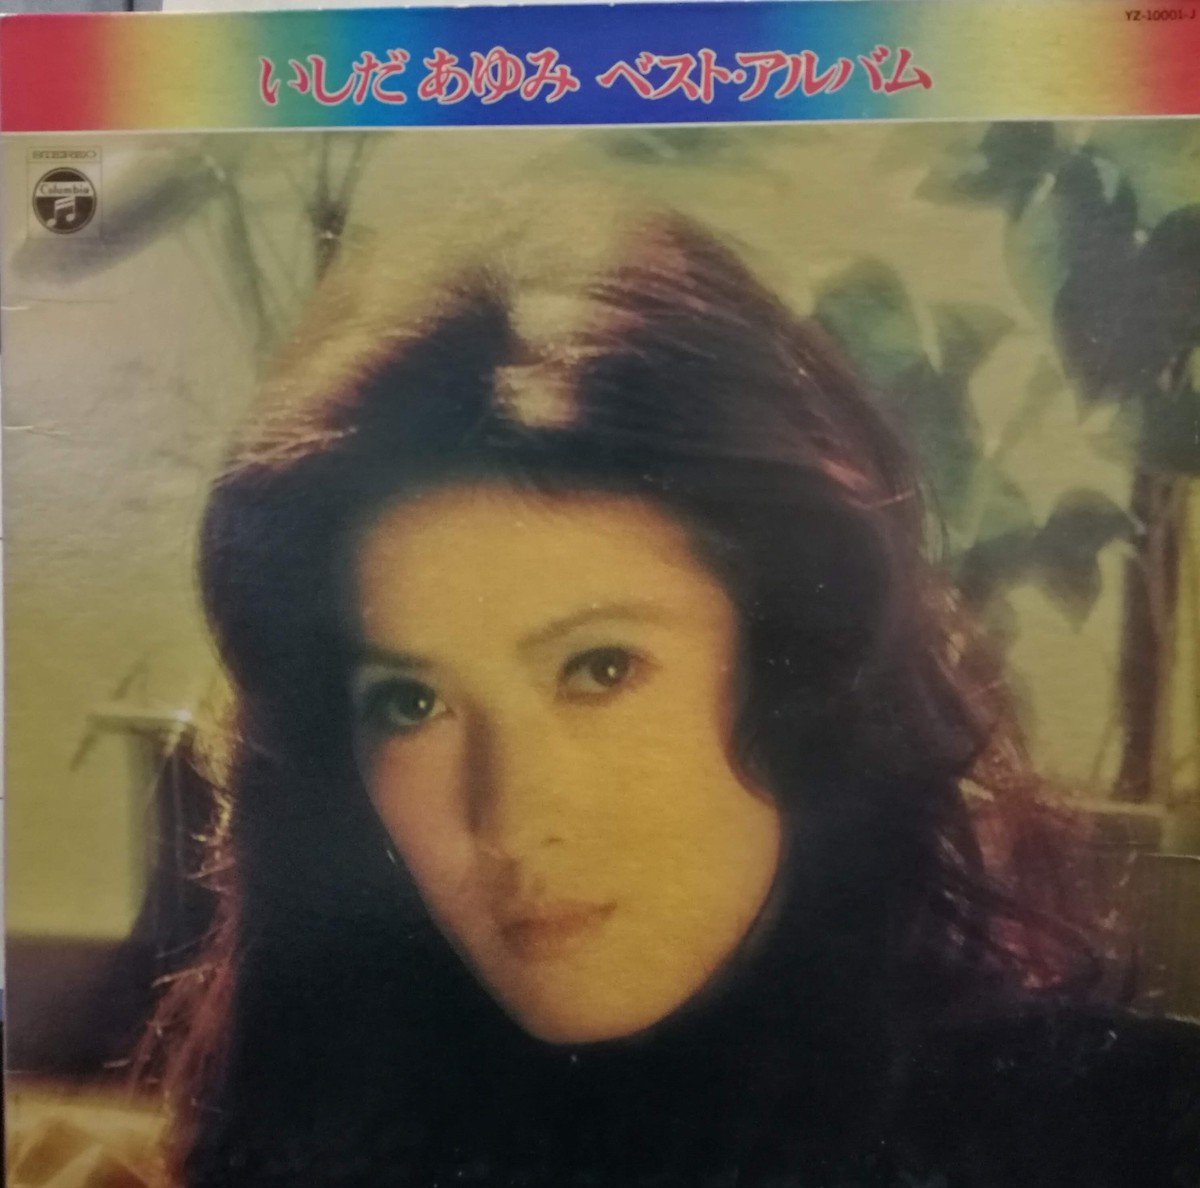 Lp いしだあゆみ Best Album Compact Disco Asia